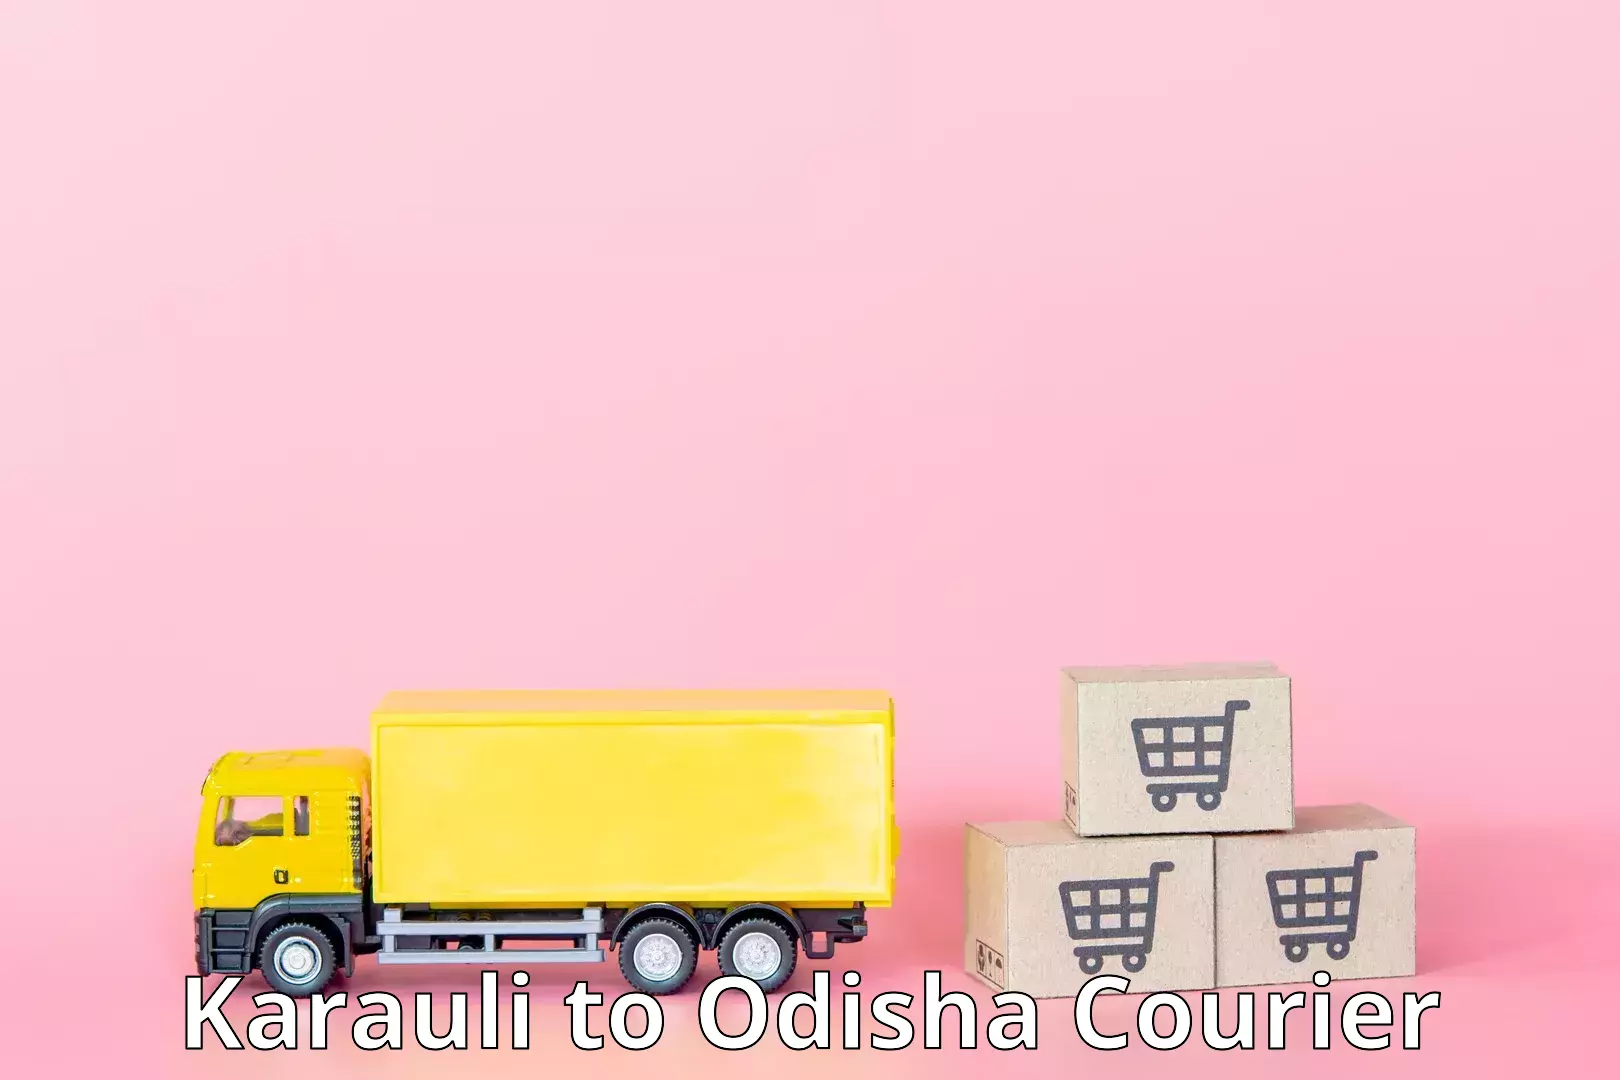 Modern courier technology Karauli to Odisha